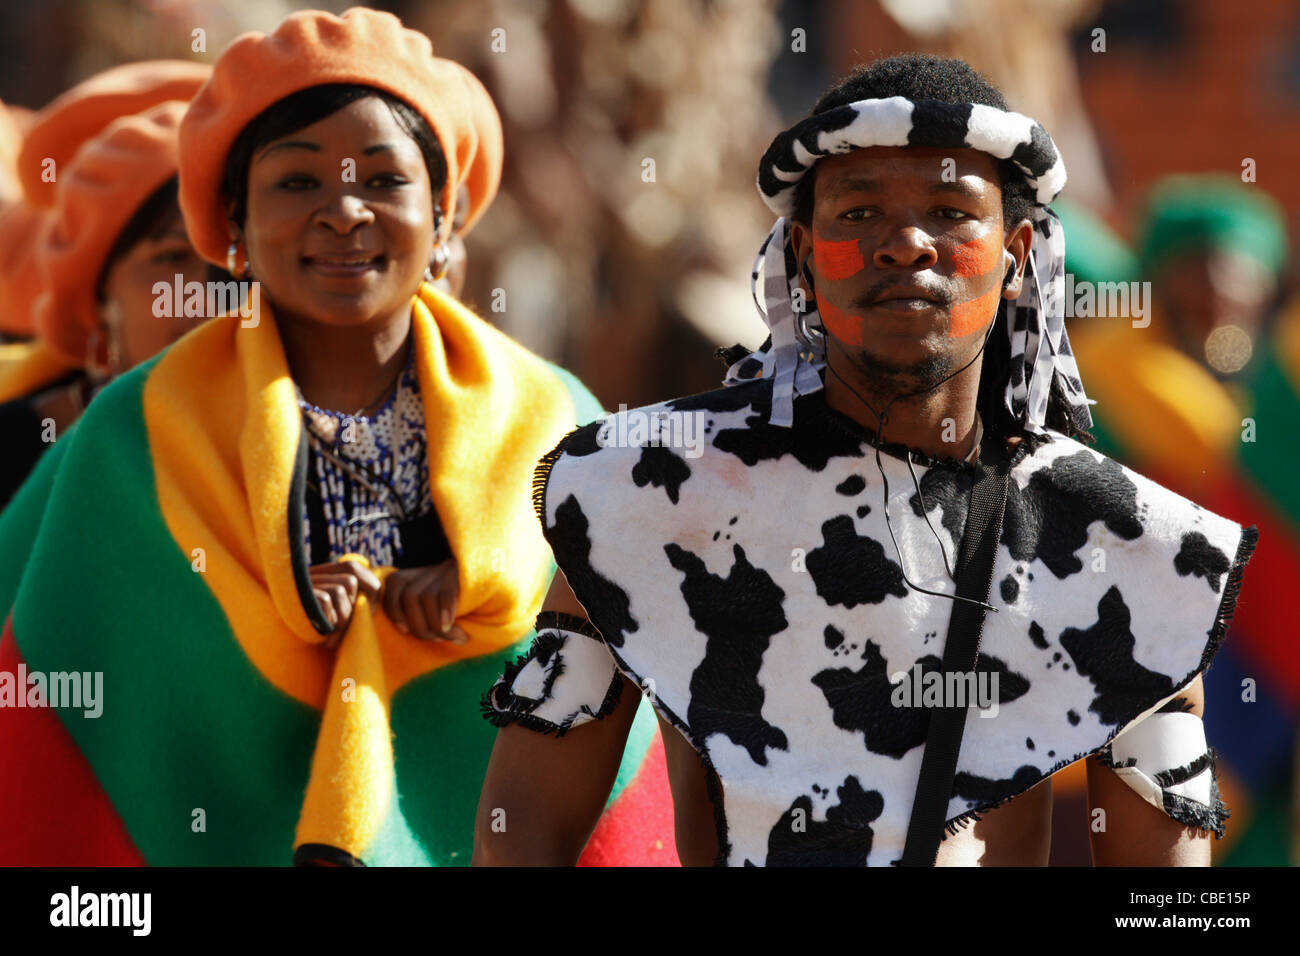 Traditionell bekleideten Männer und Frauen führen Sie an der Öffnung Zeremonie von den 2010 FIFA World Cup Soccer Tournament in Südafrika Stockfoto